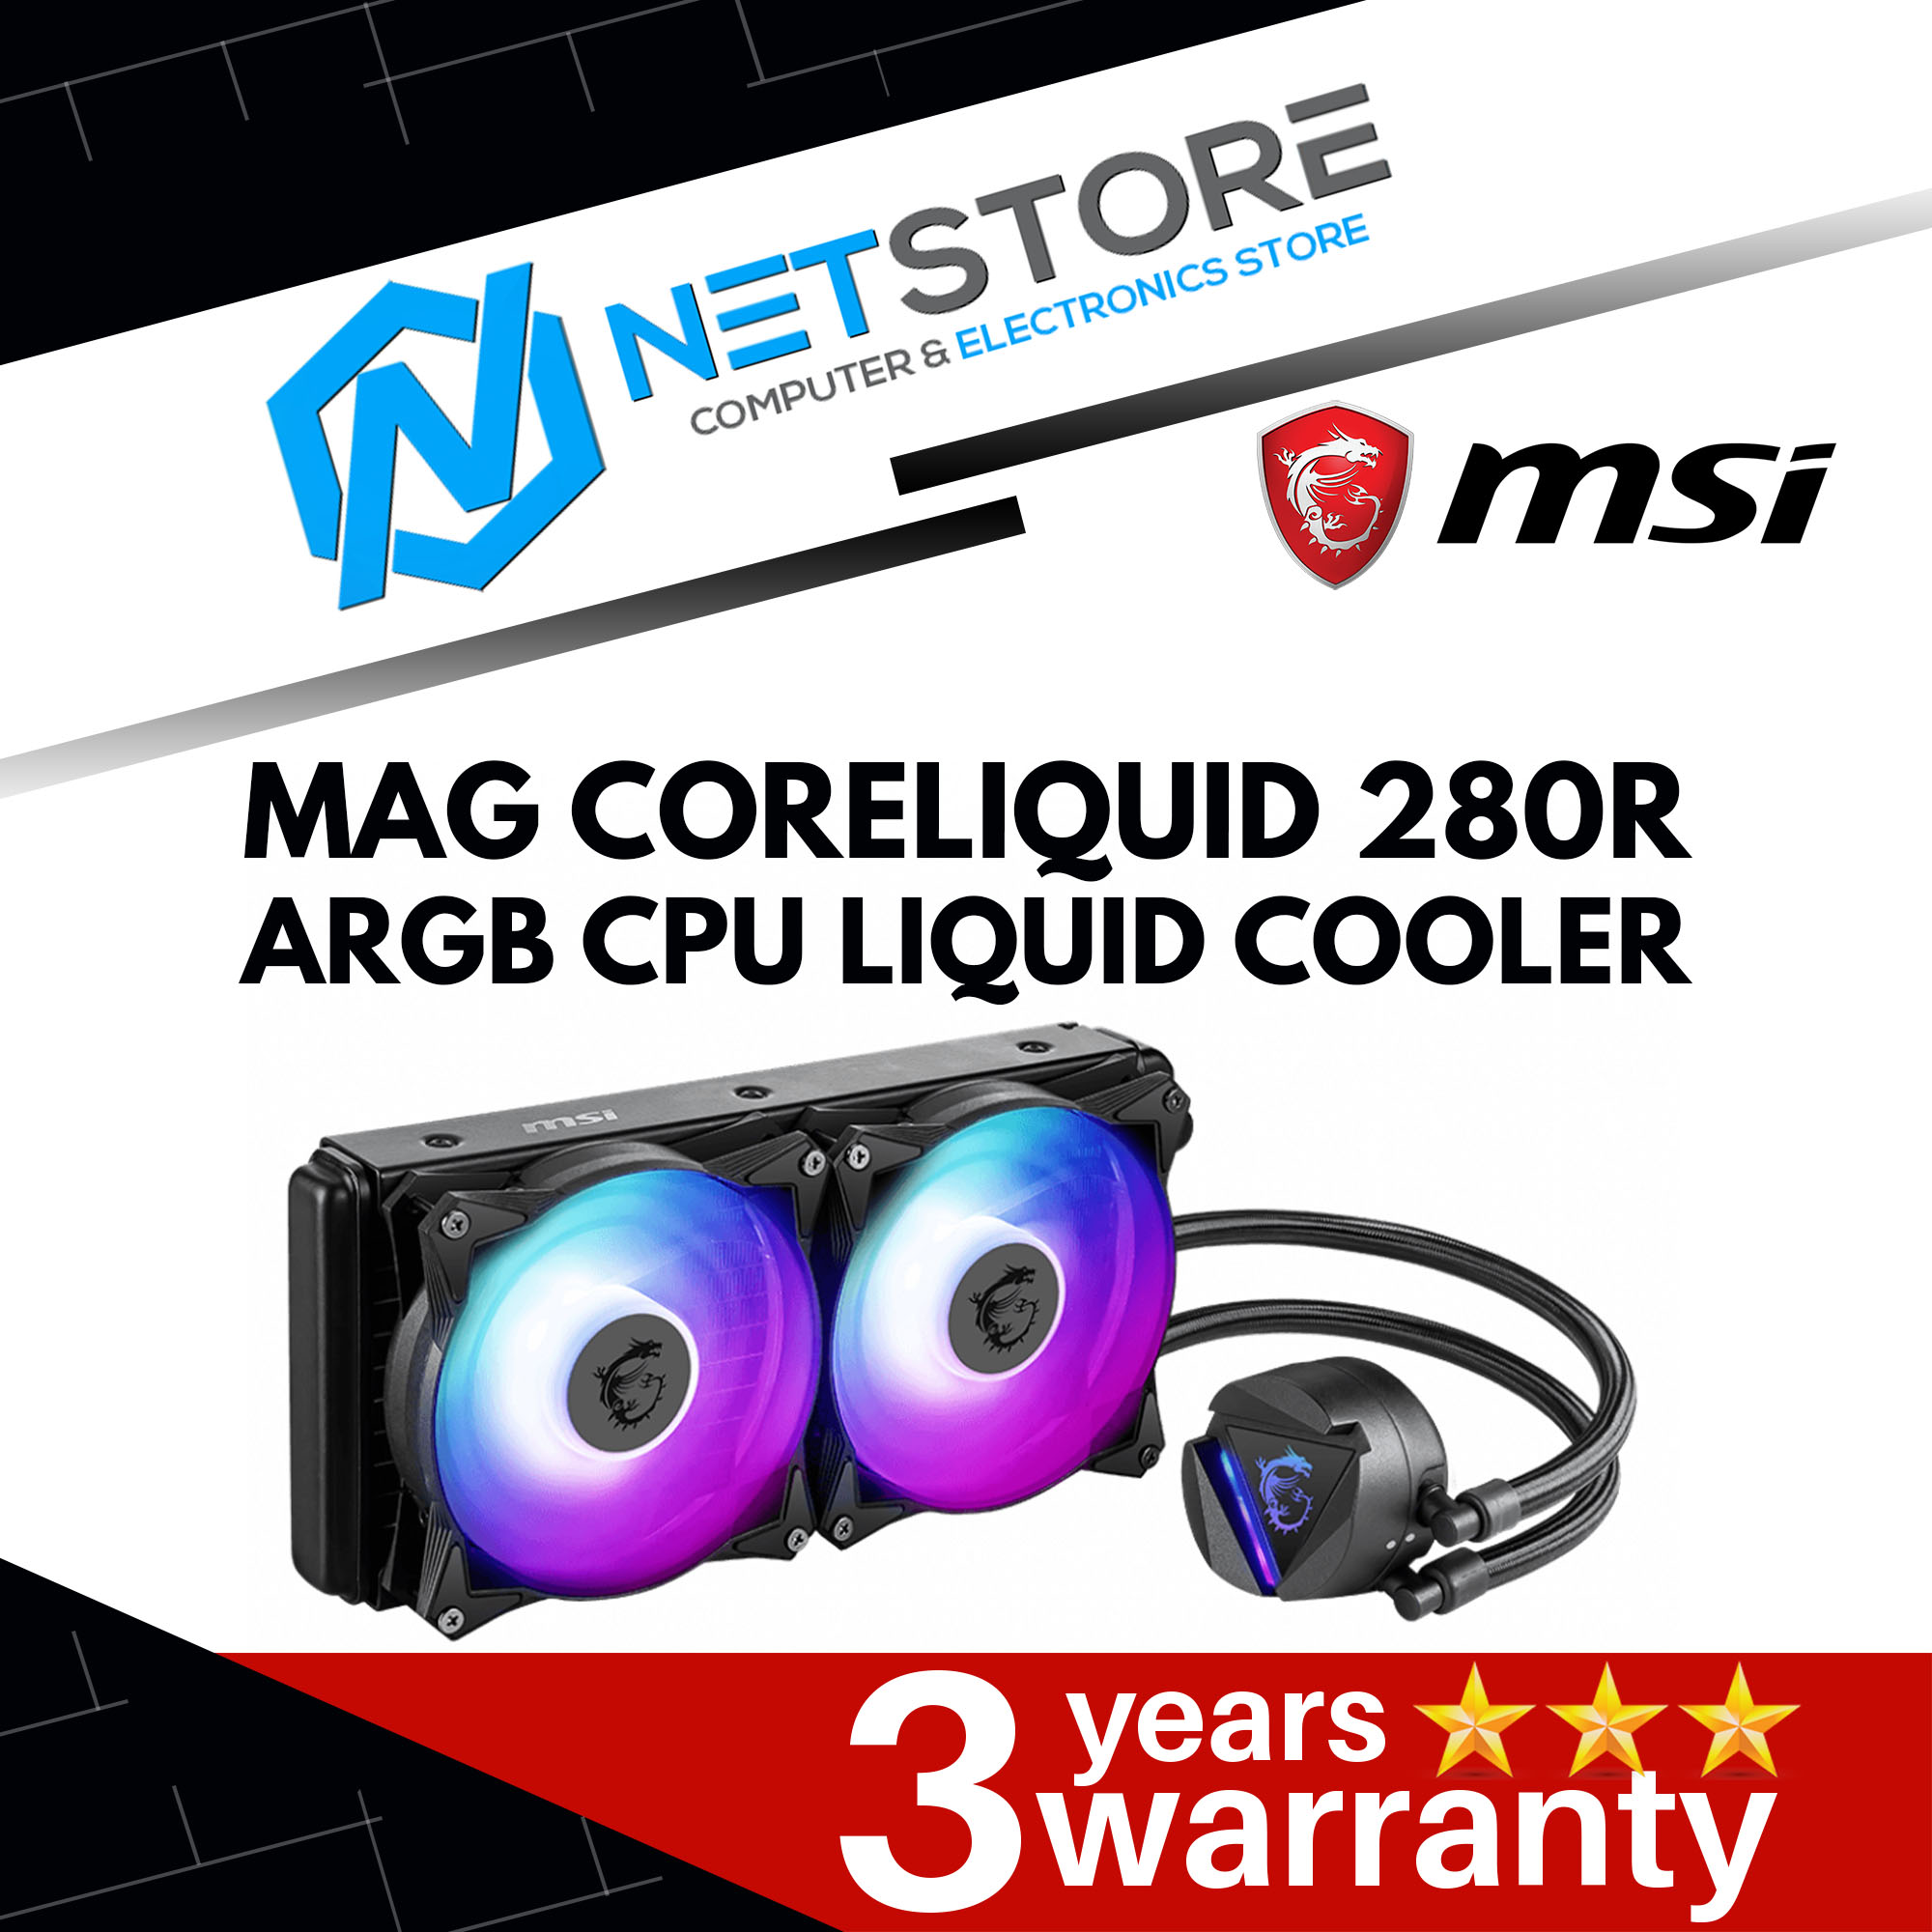 MSI MAG CORELIQUID 280R ARGB CPU LIQUID COOLER